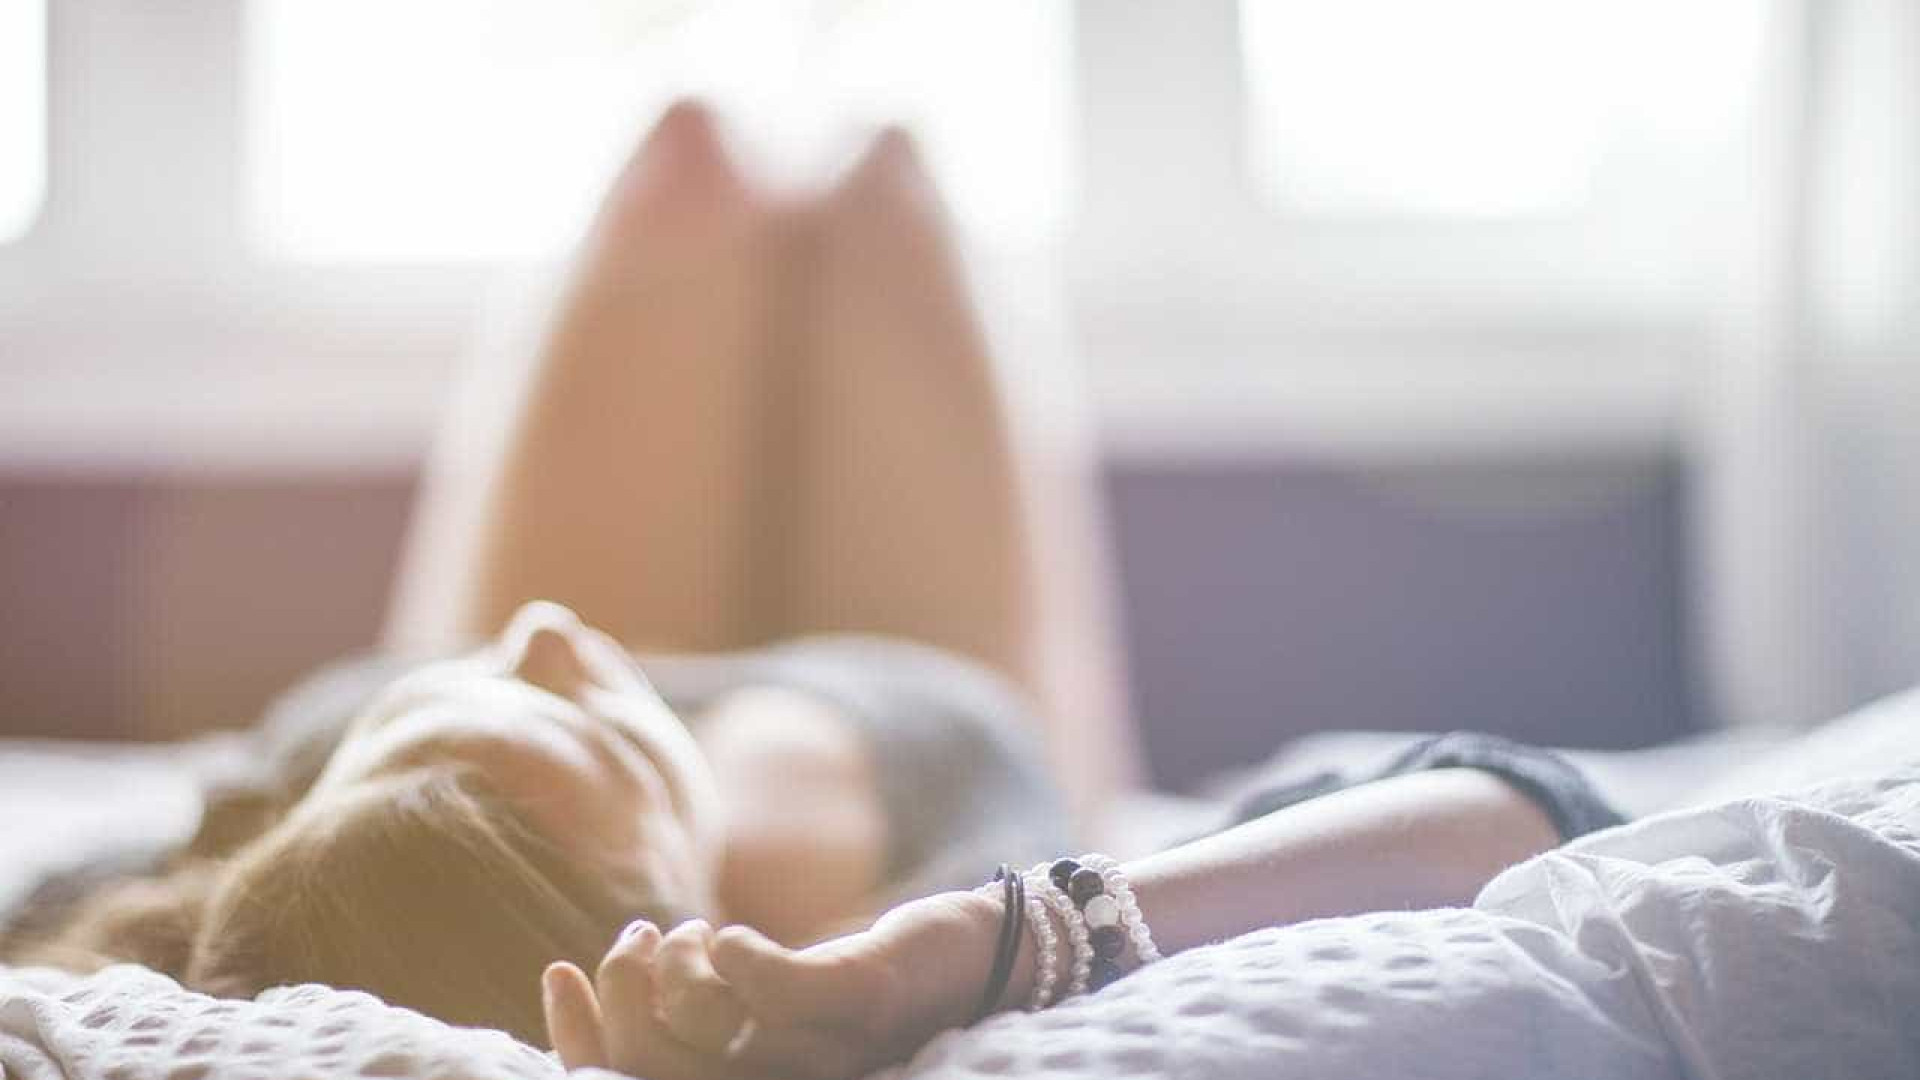 Toque anal pode potencializar o orgasmo feminino, diz estudo